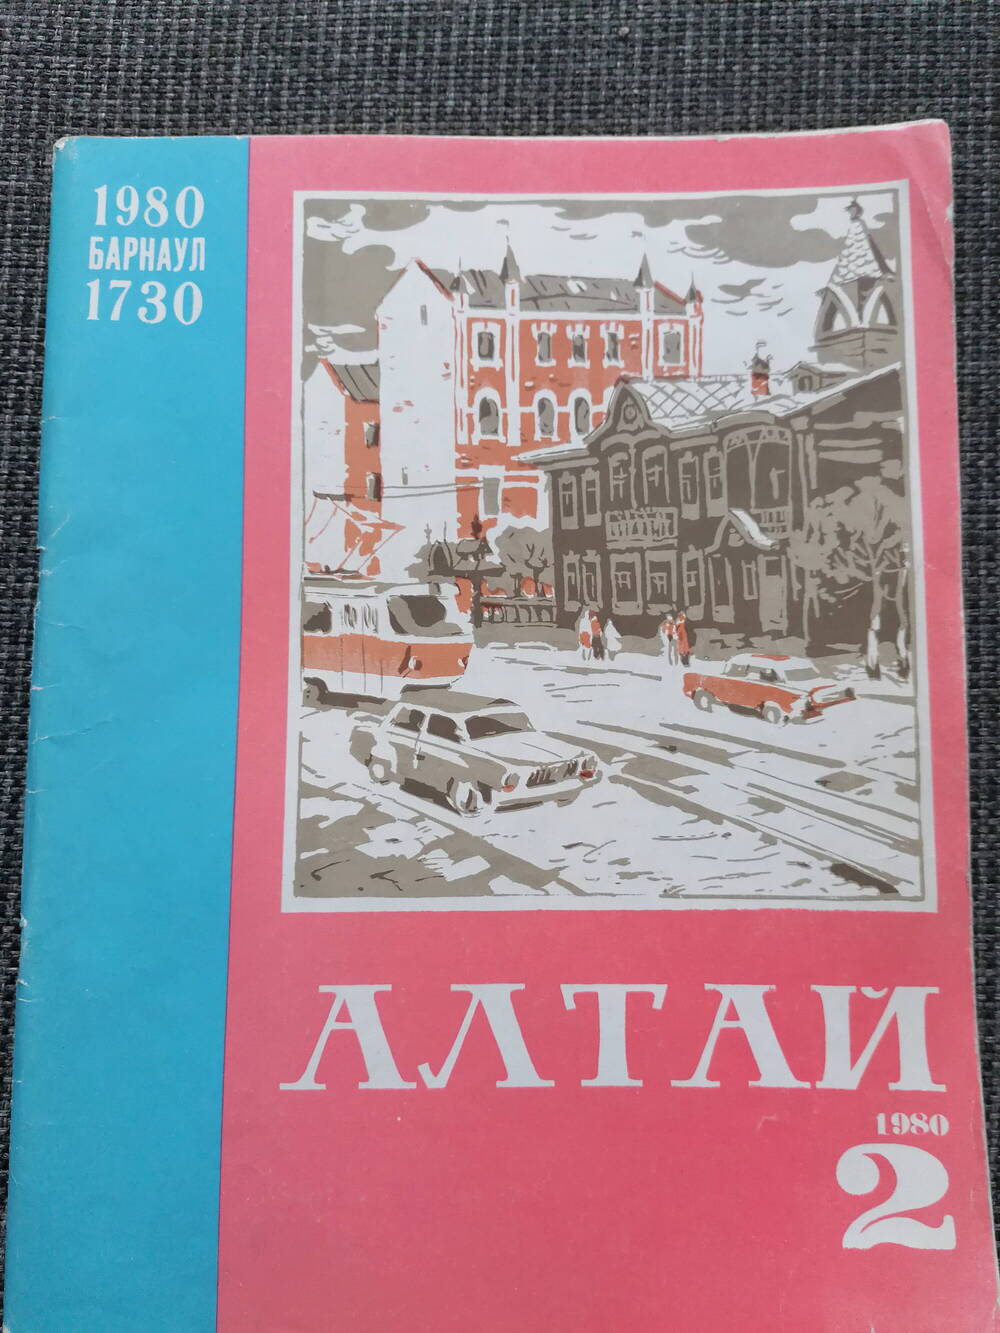 Журнал Алтай N 2, 1980 г.